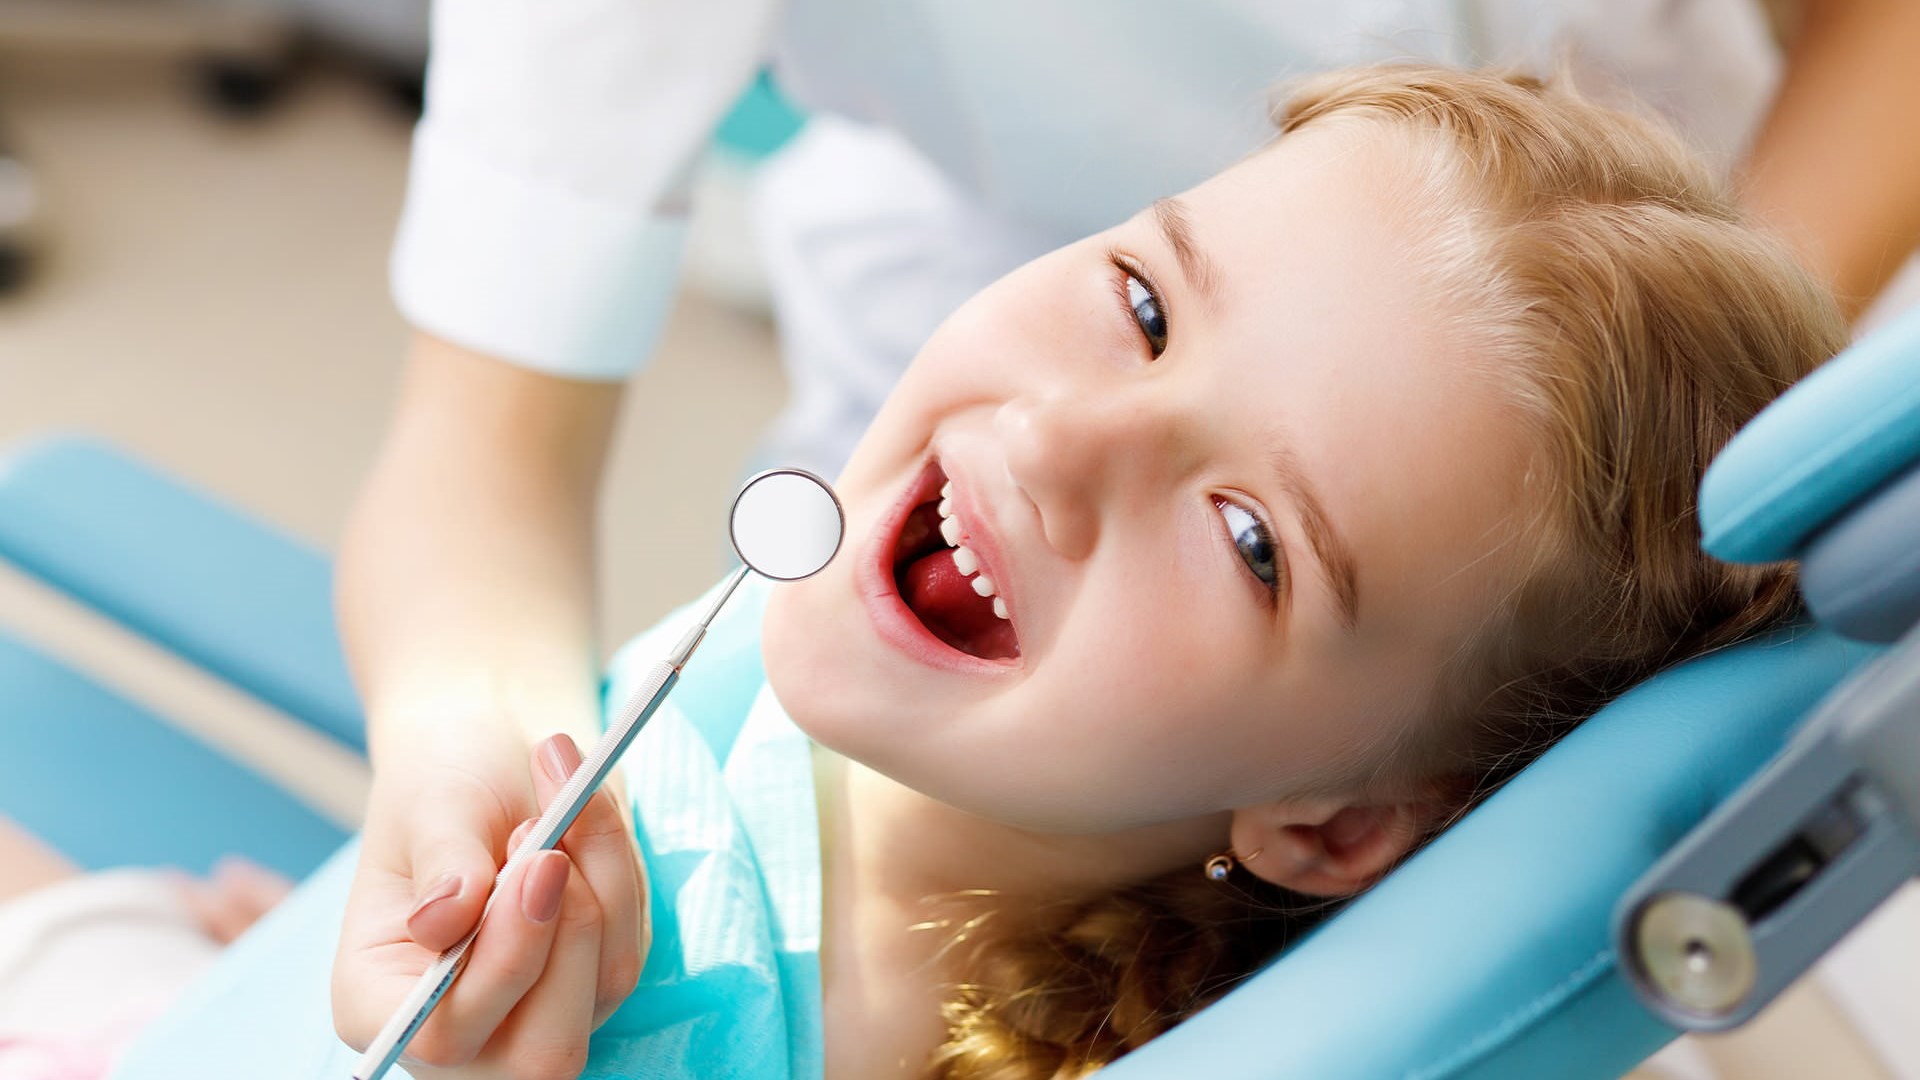 Σε ποια ηλικία πρέπει να γίνεται η πρώτη επίσκεψη του παιδιού στον οδοντίατρο;